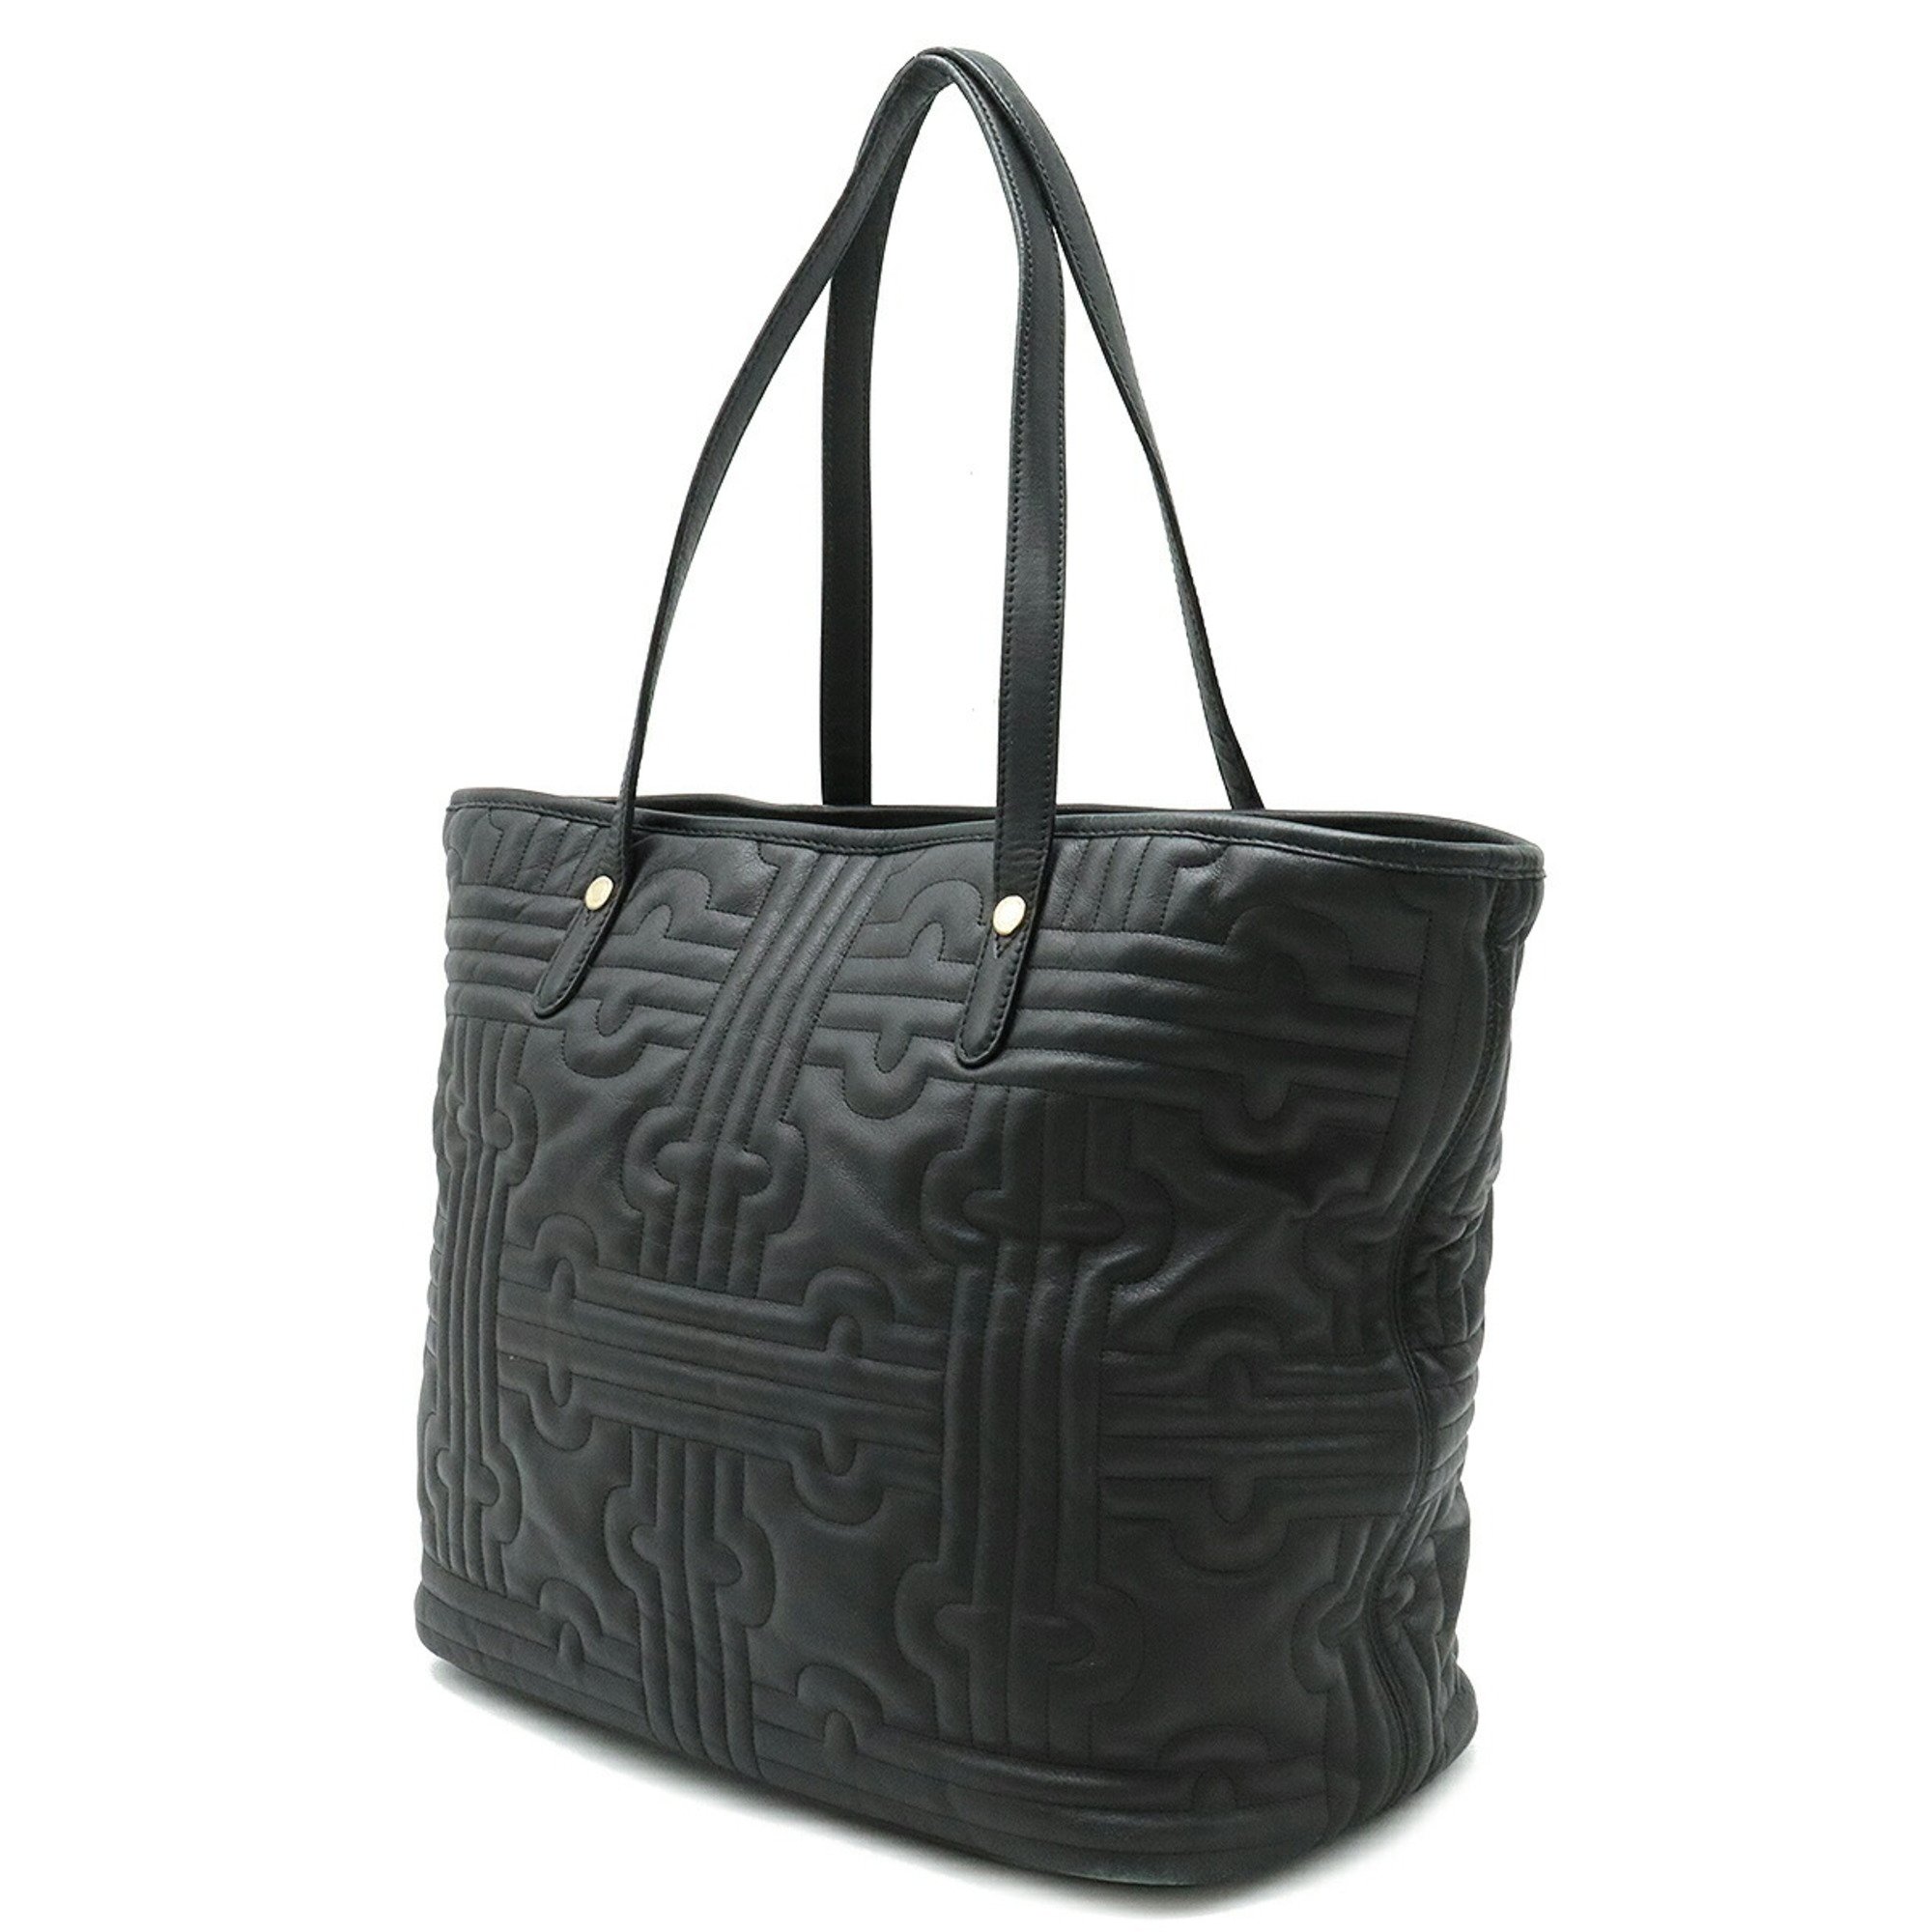 Bvlgari 31910 Women's Quilting Shoulder Bag,Tote Bag Black